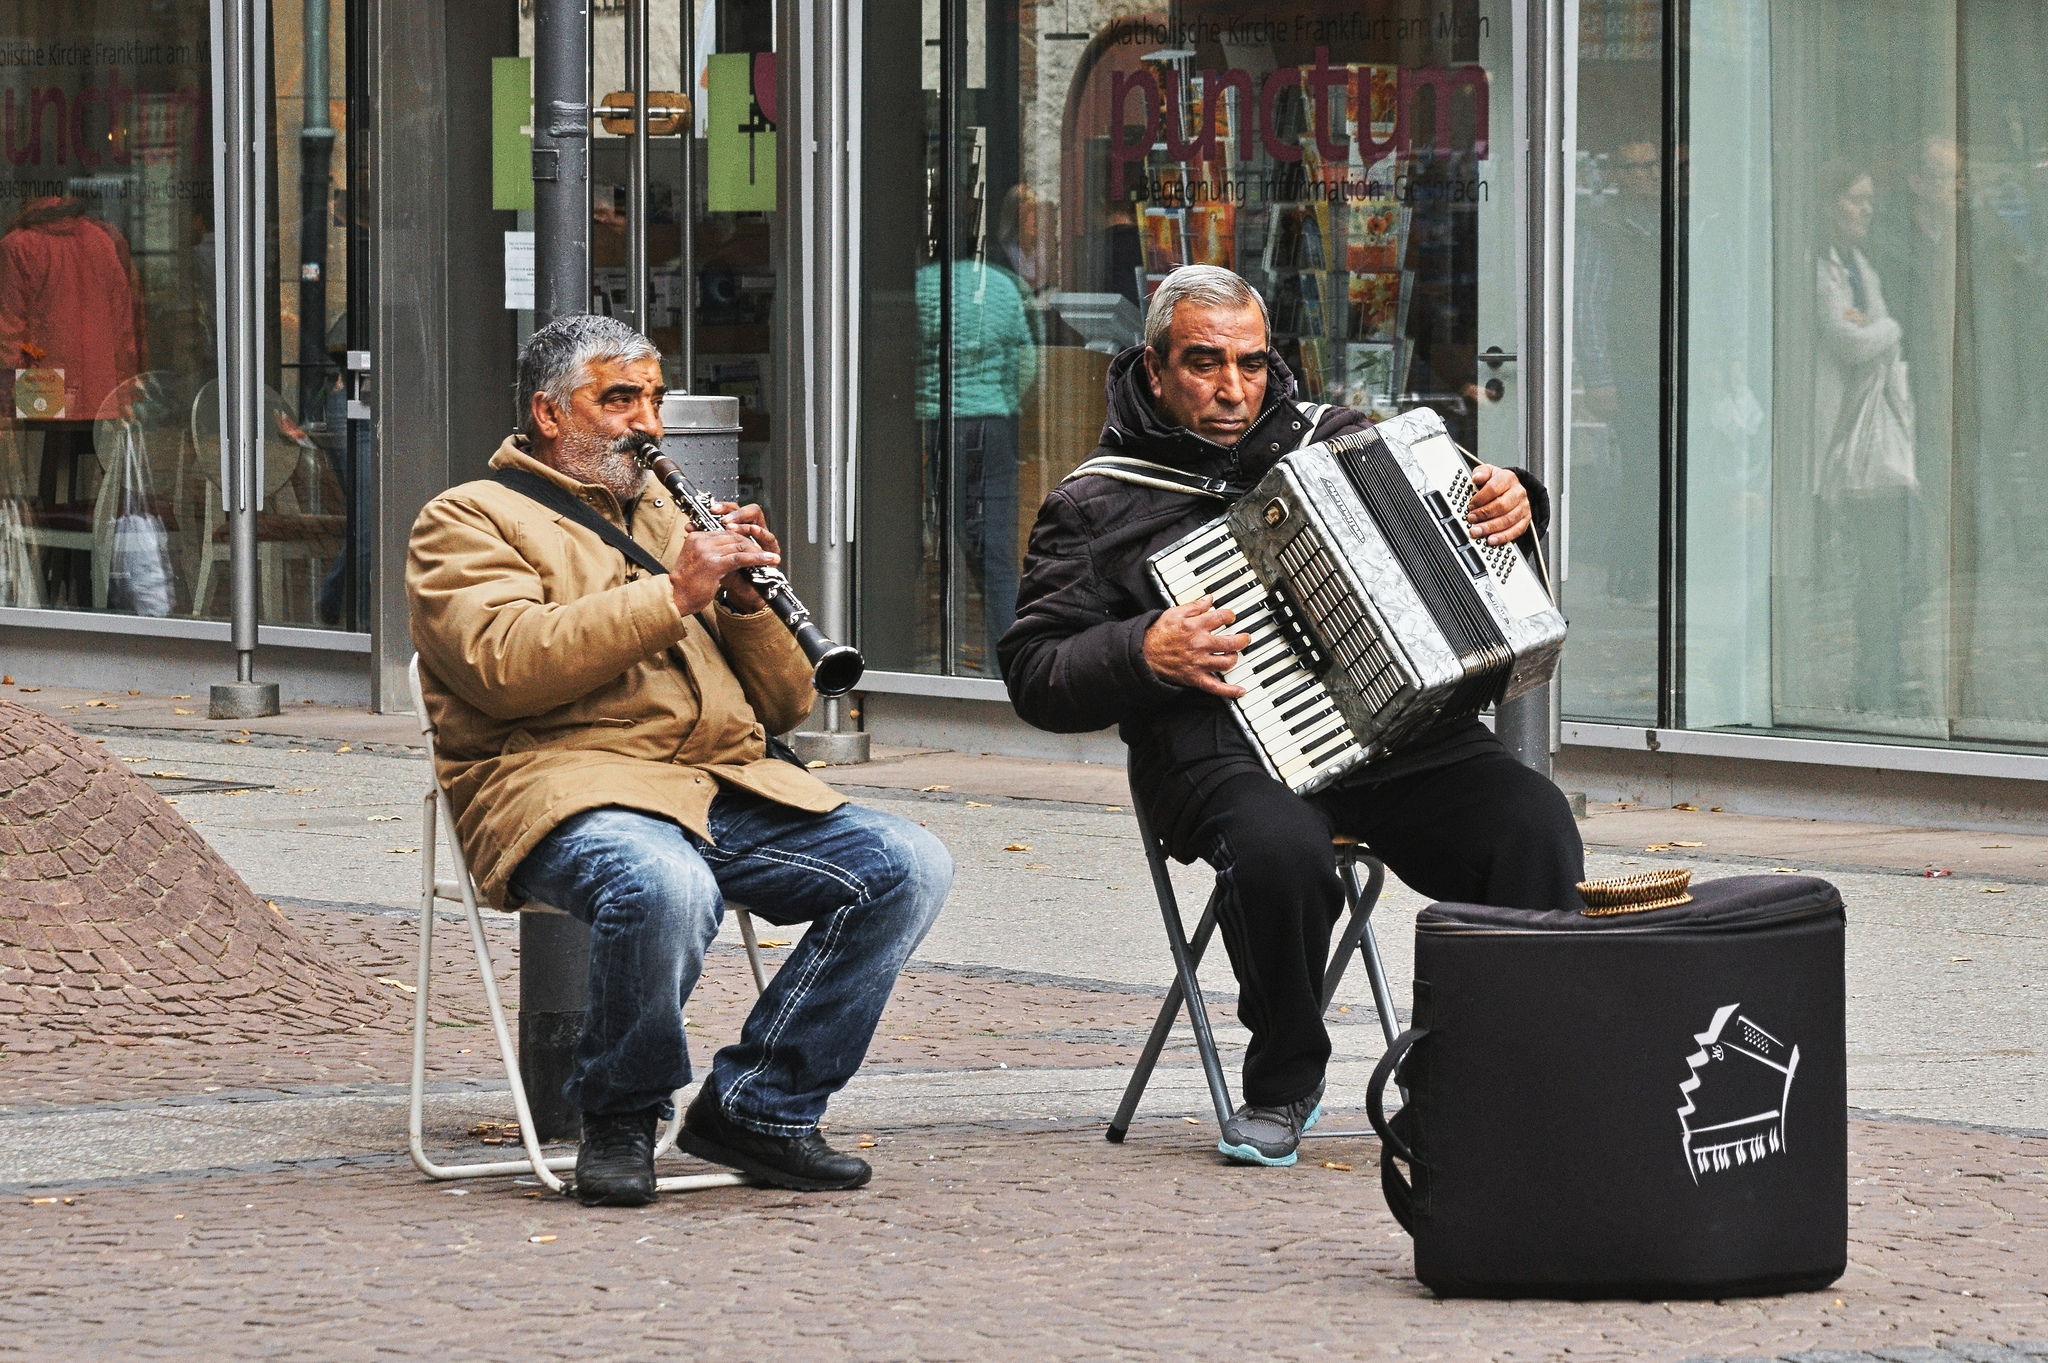 Звук людей на улице. Люди на улице. Музыка на улице. Музыка на улице картинка. Фото людей на улице.